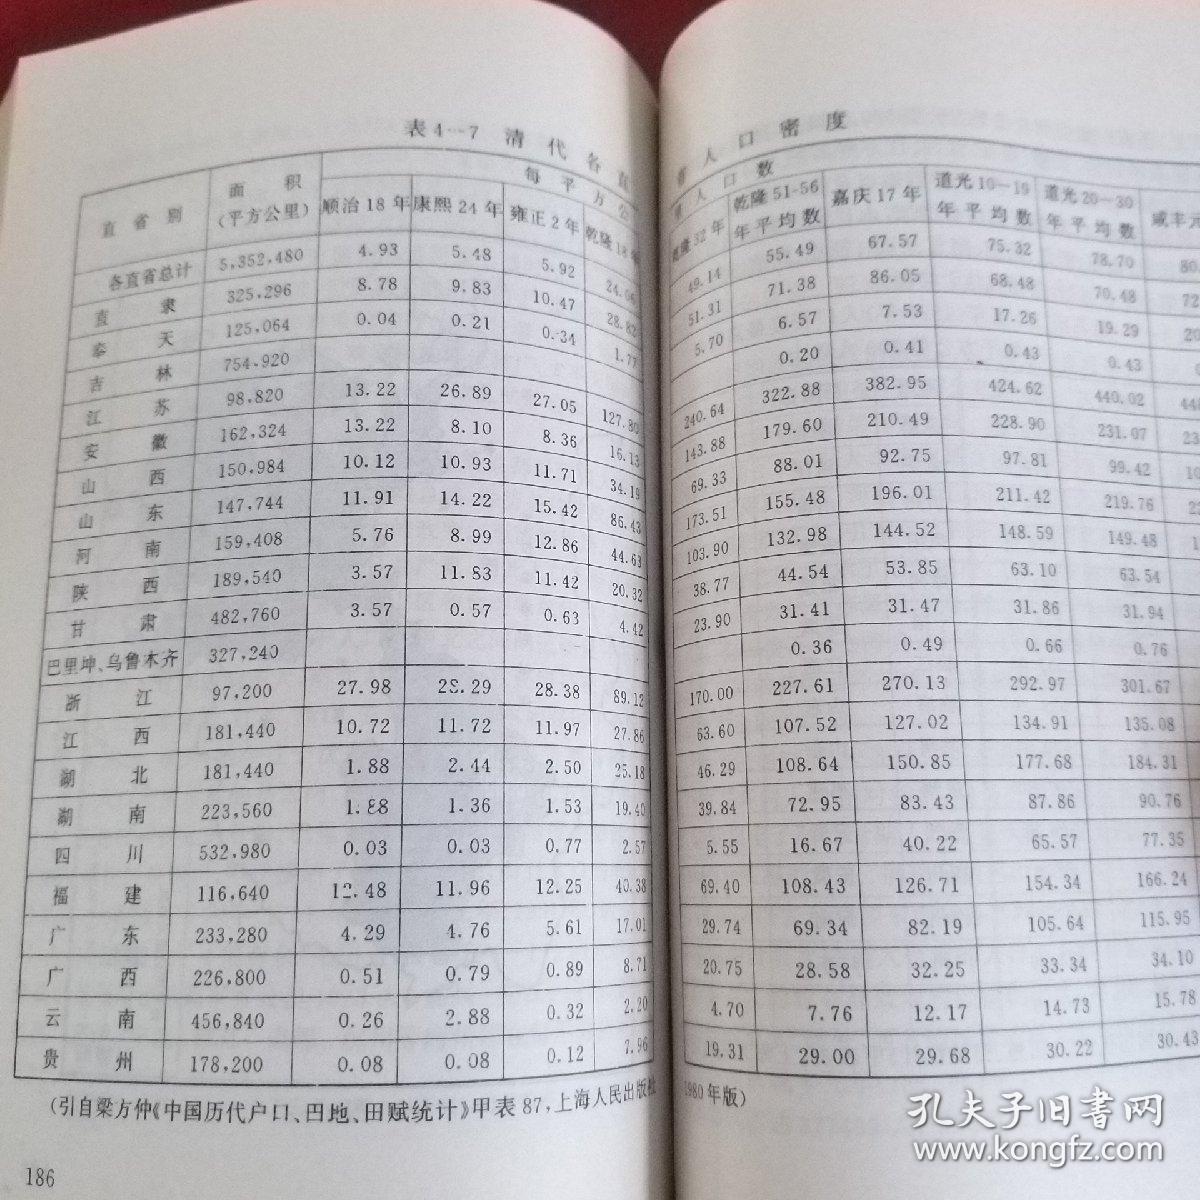 中国历史地理学  (2000册)